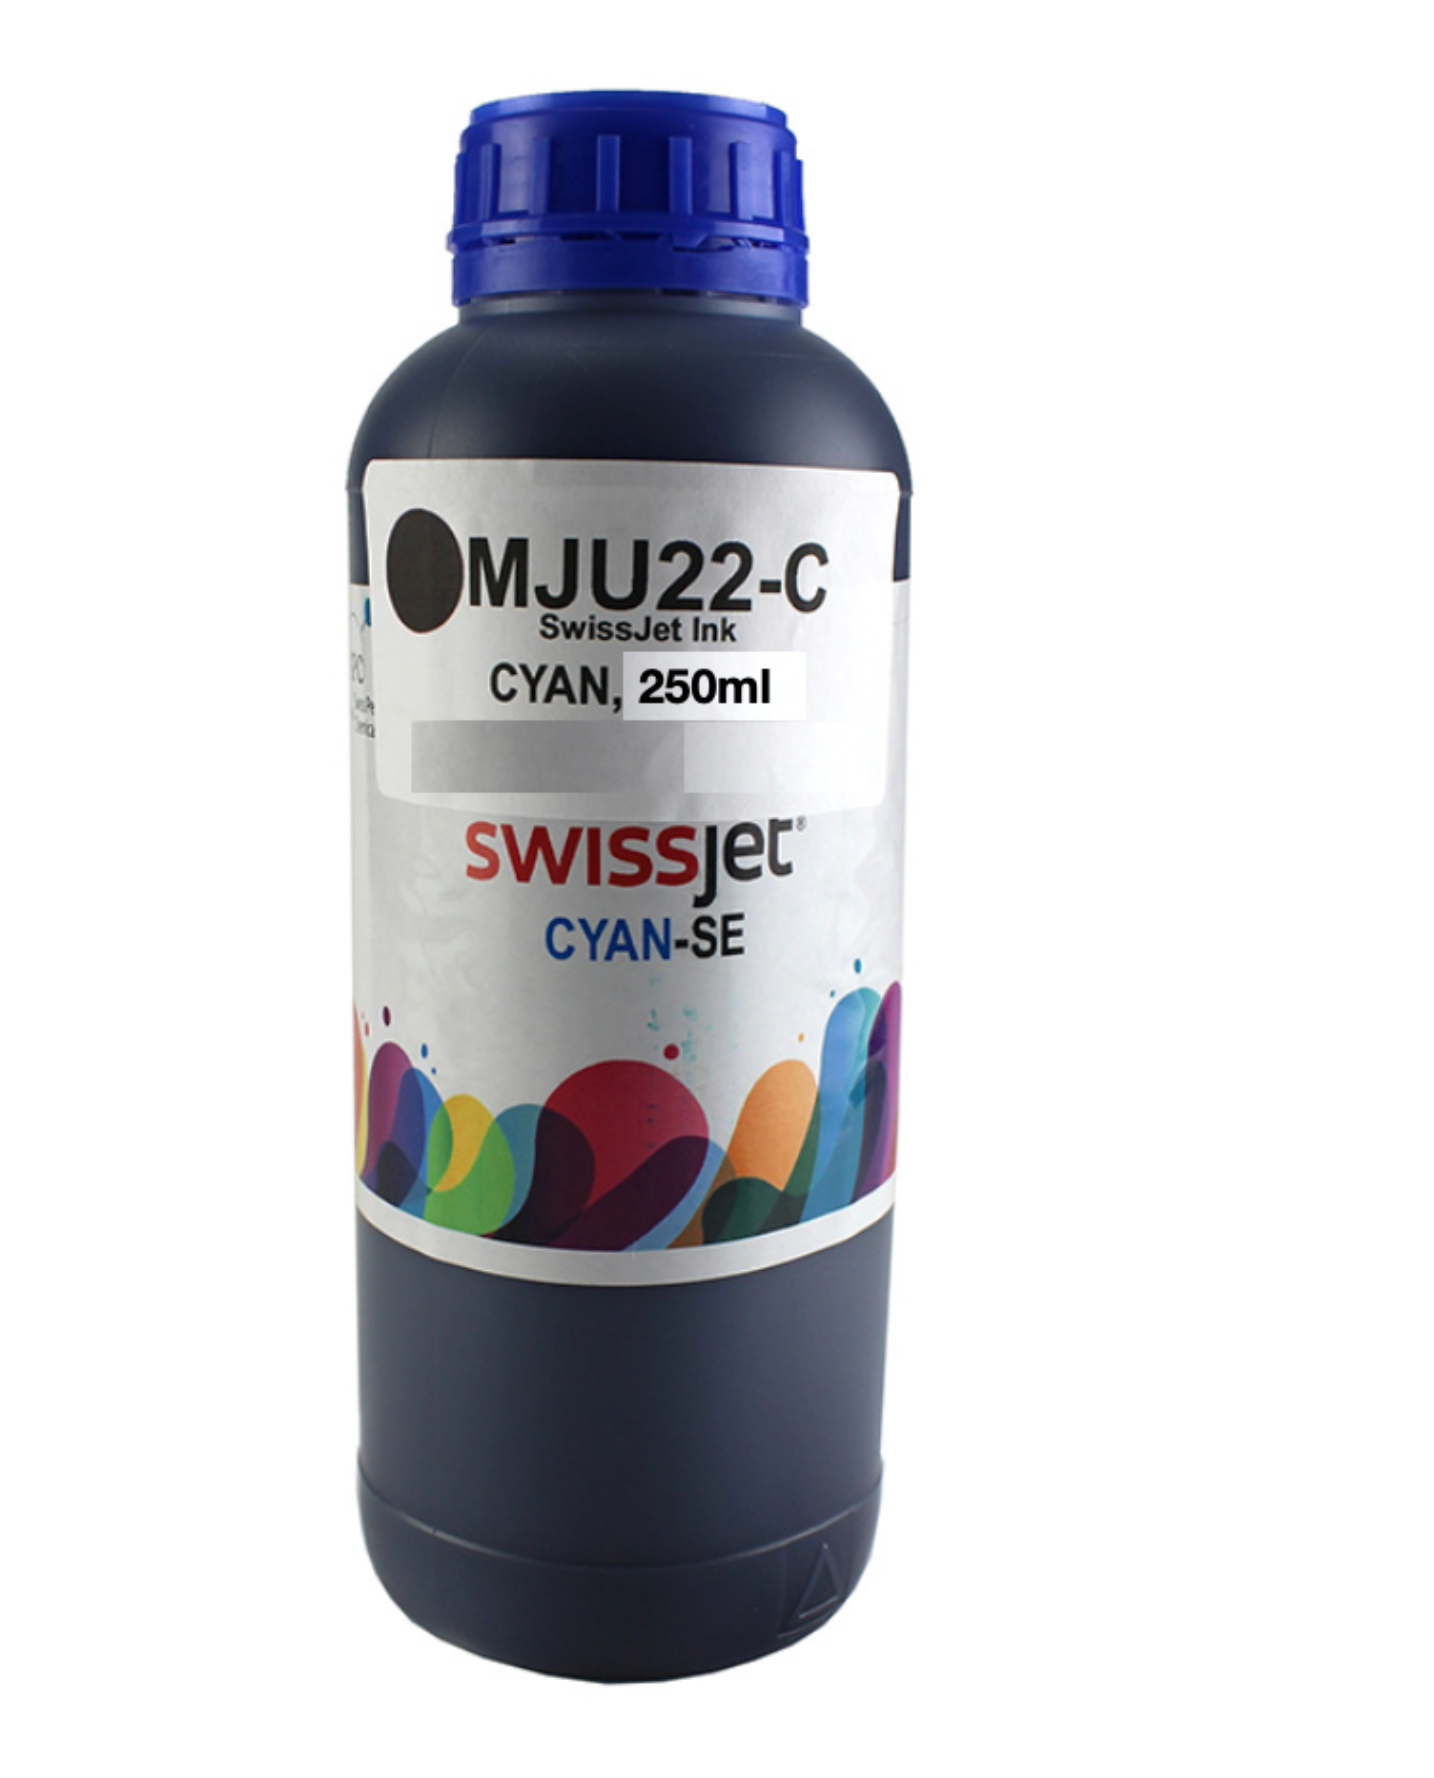 SWISSjet SUBLIMATION INK SWRELC LIGHT CYAN 250ml | SWISSjet